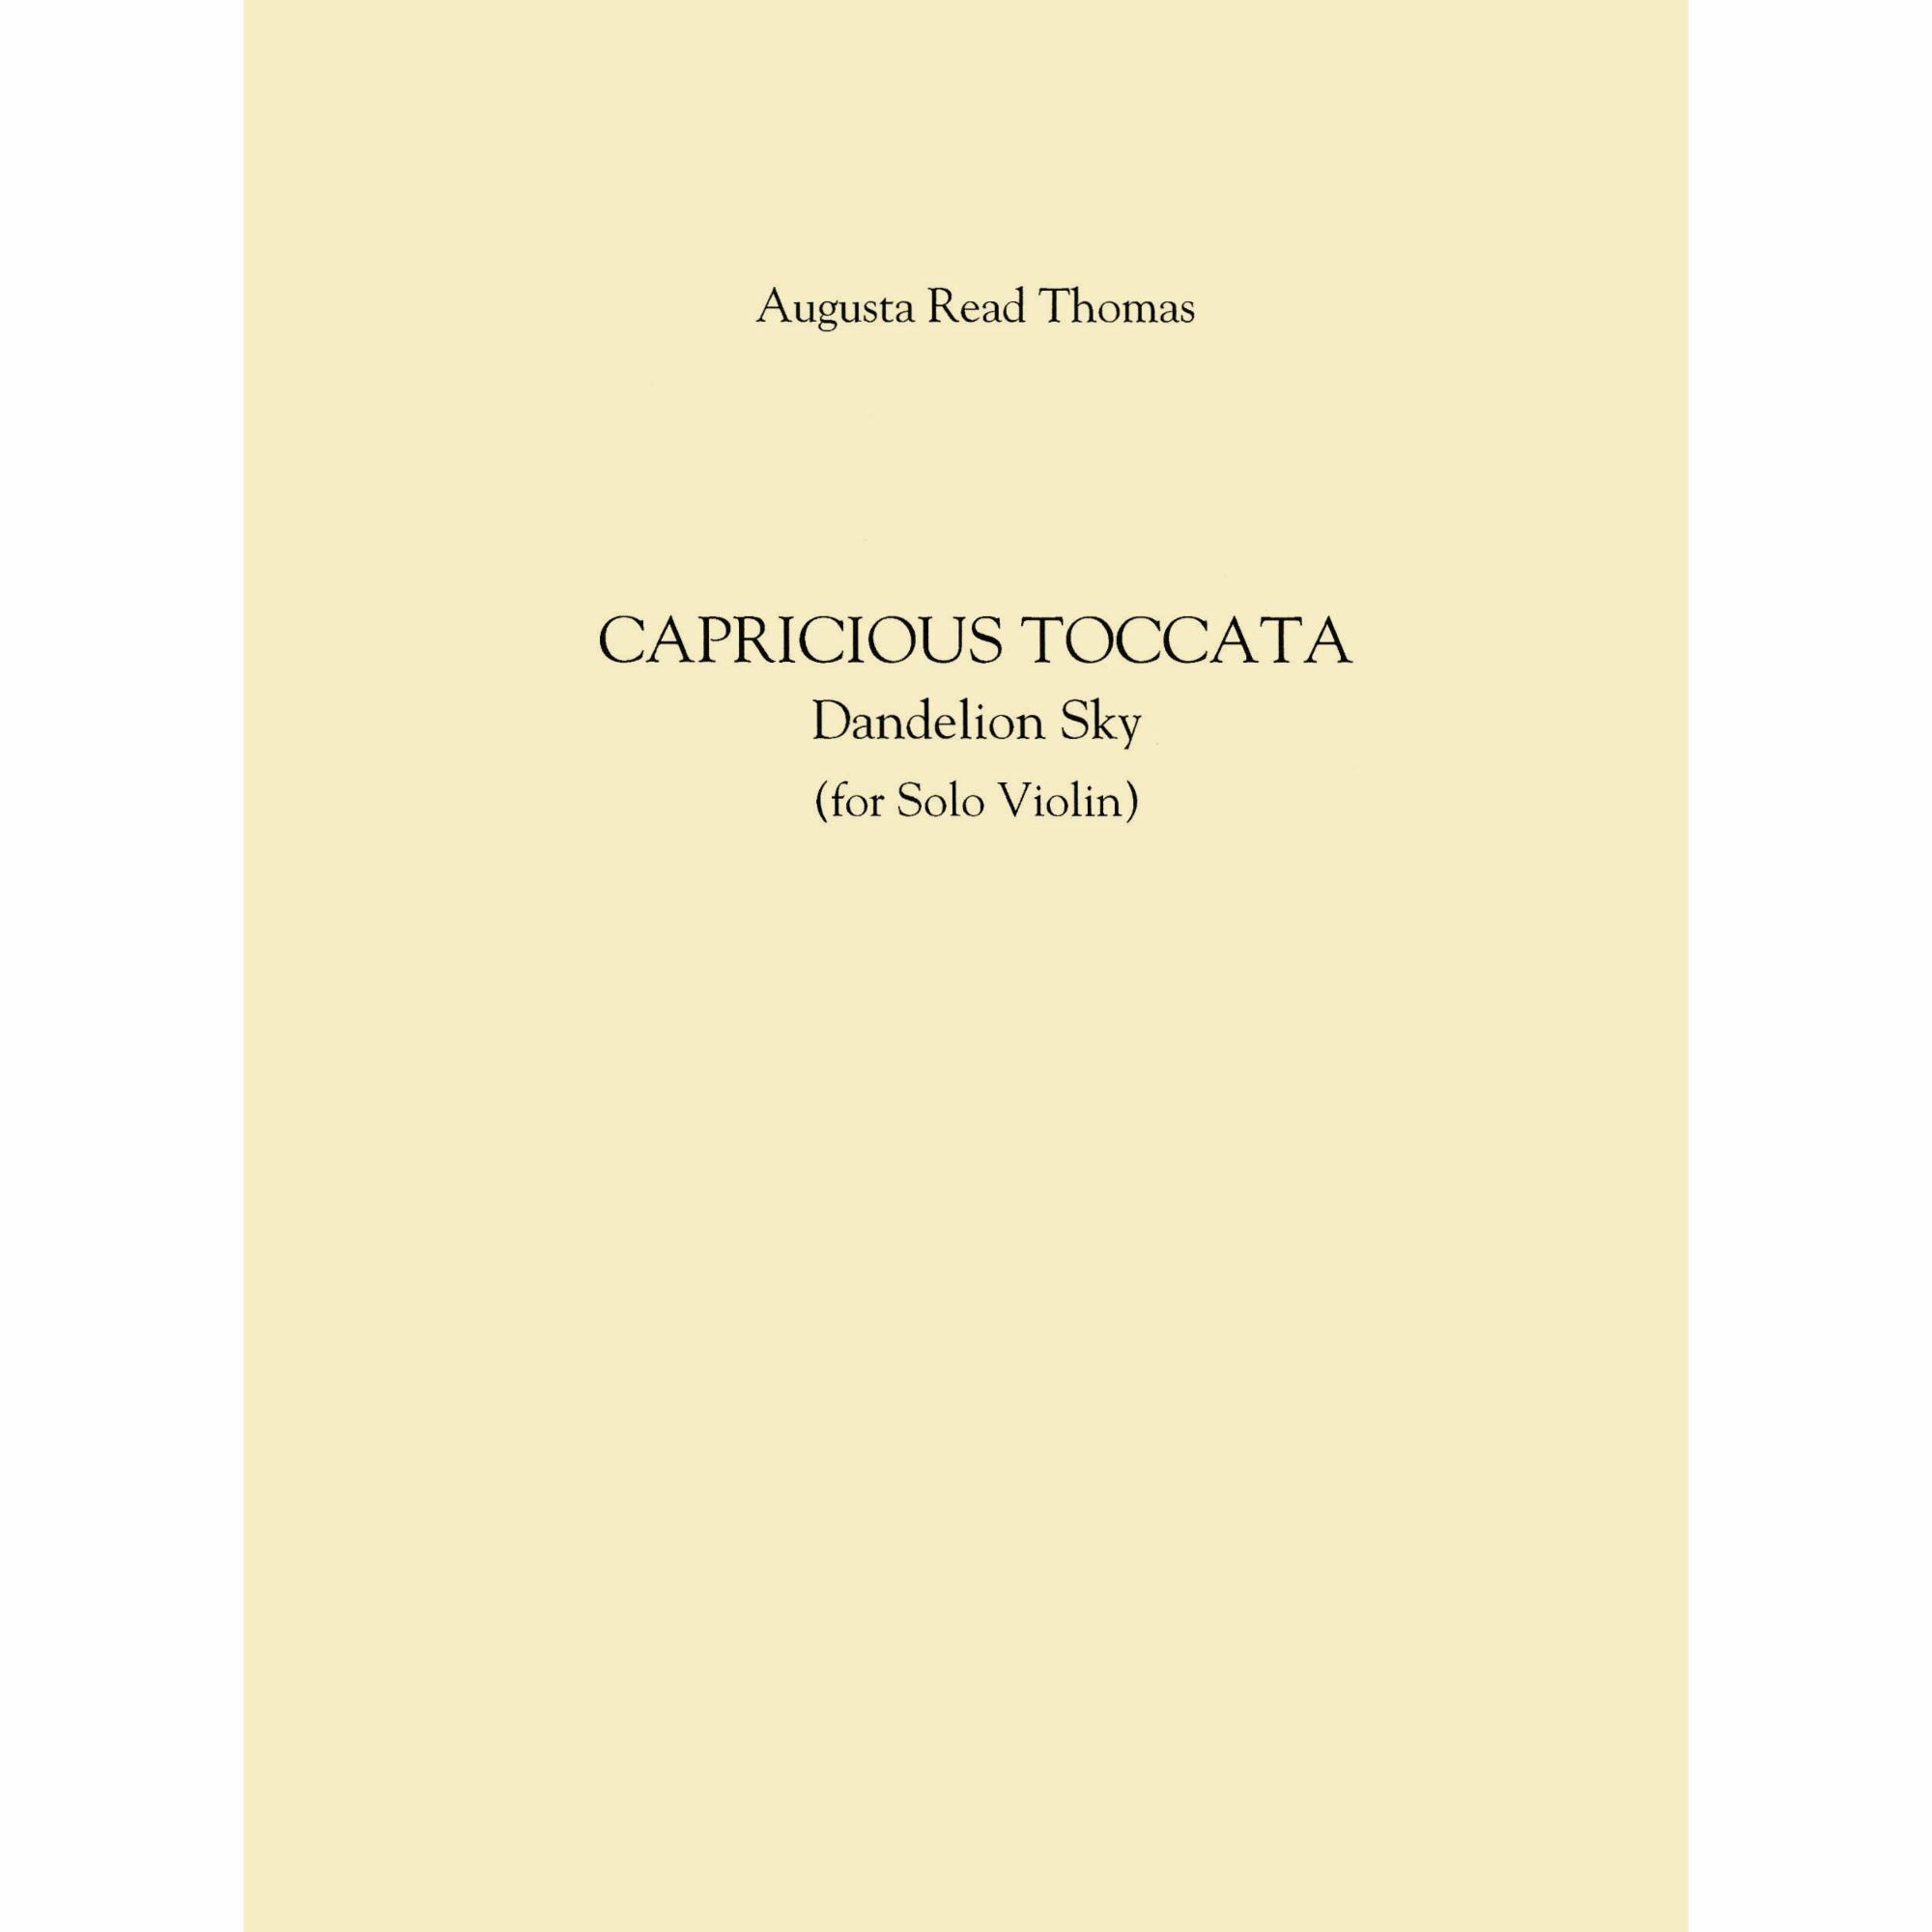 Thomas -- Capricious Toccata (Dandelion Sky) for Solo Violin